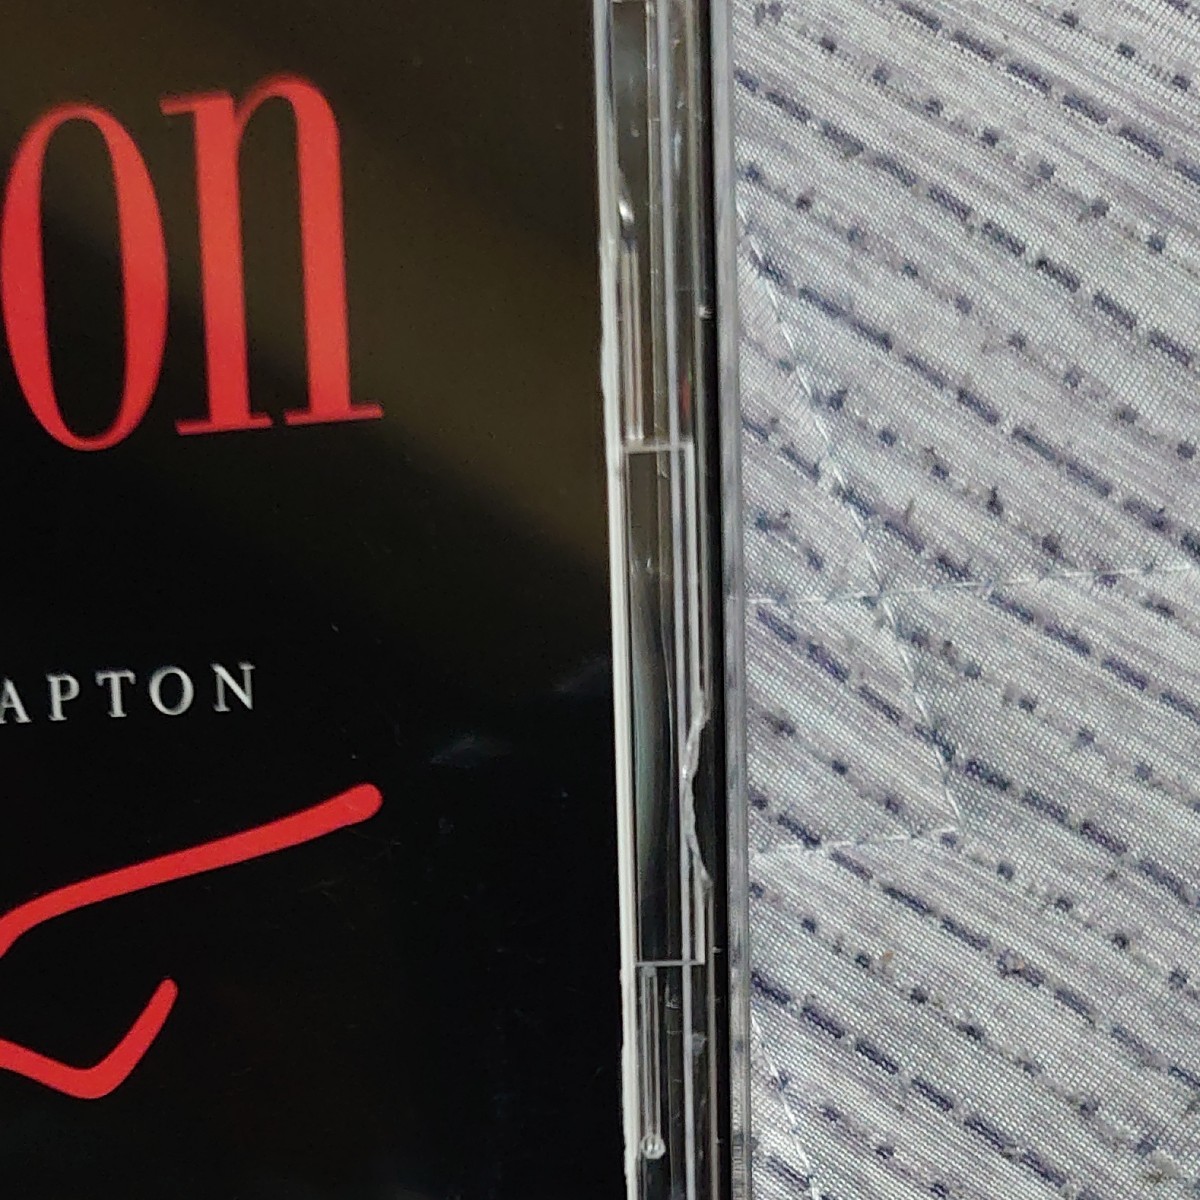 エリック・クラプトン　Complete Clapton　二枚組